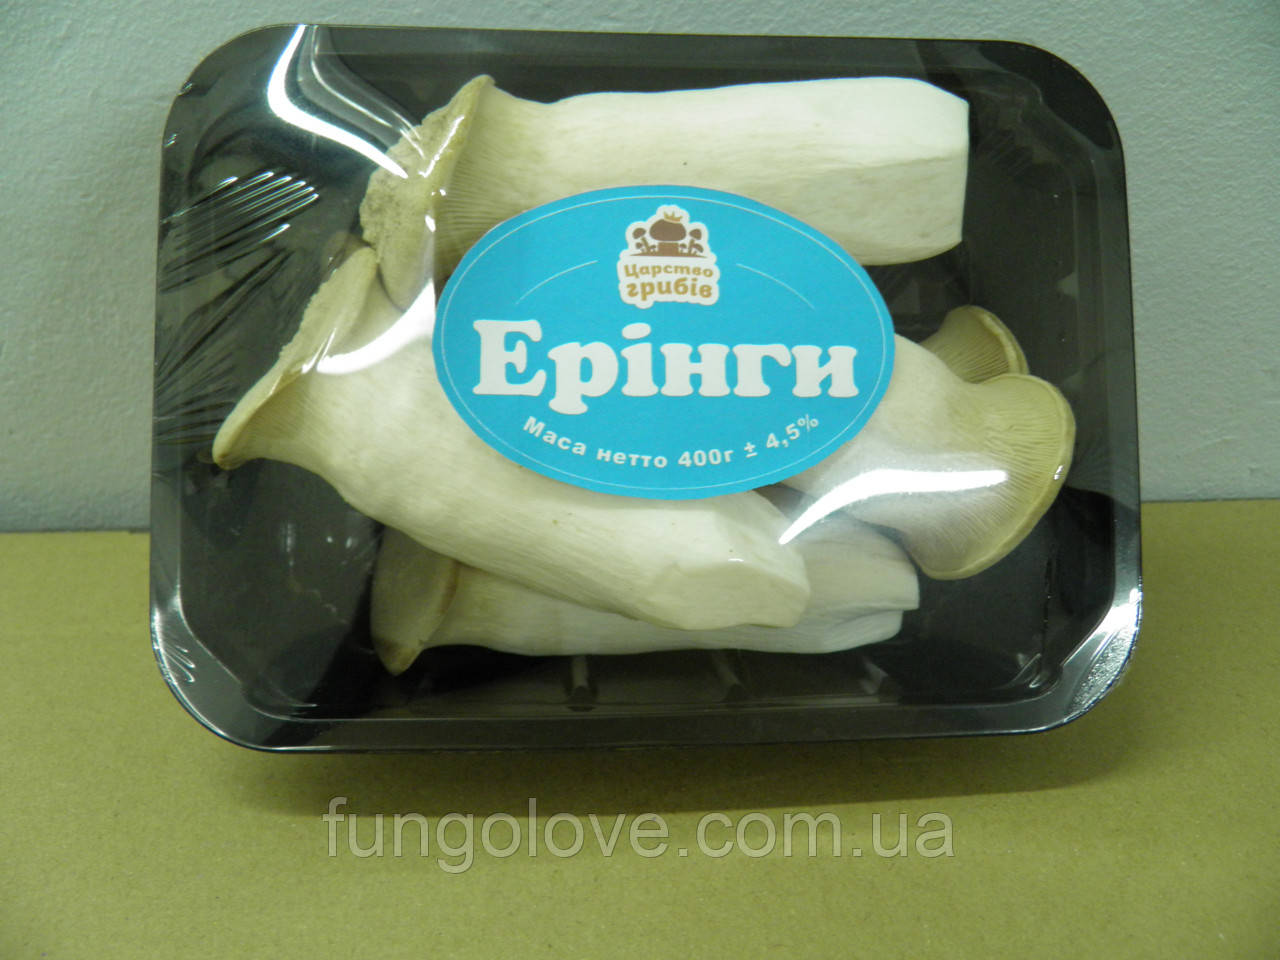 Свіжі гриби Еринги (Pleurotus eryngii) в пакованні 400 г